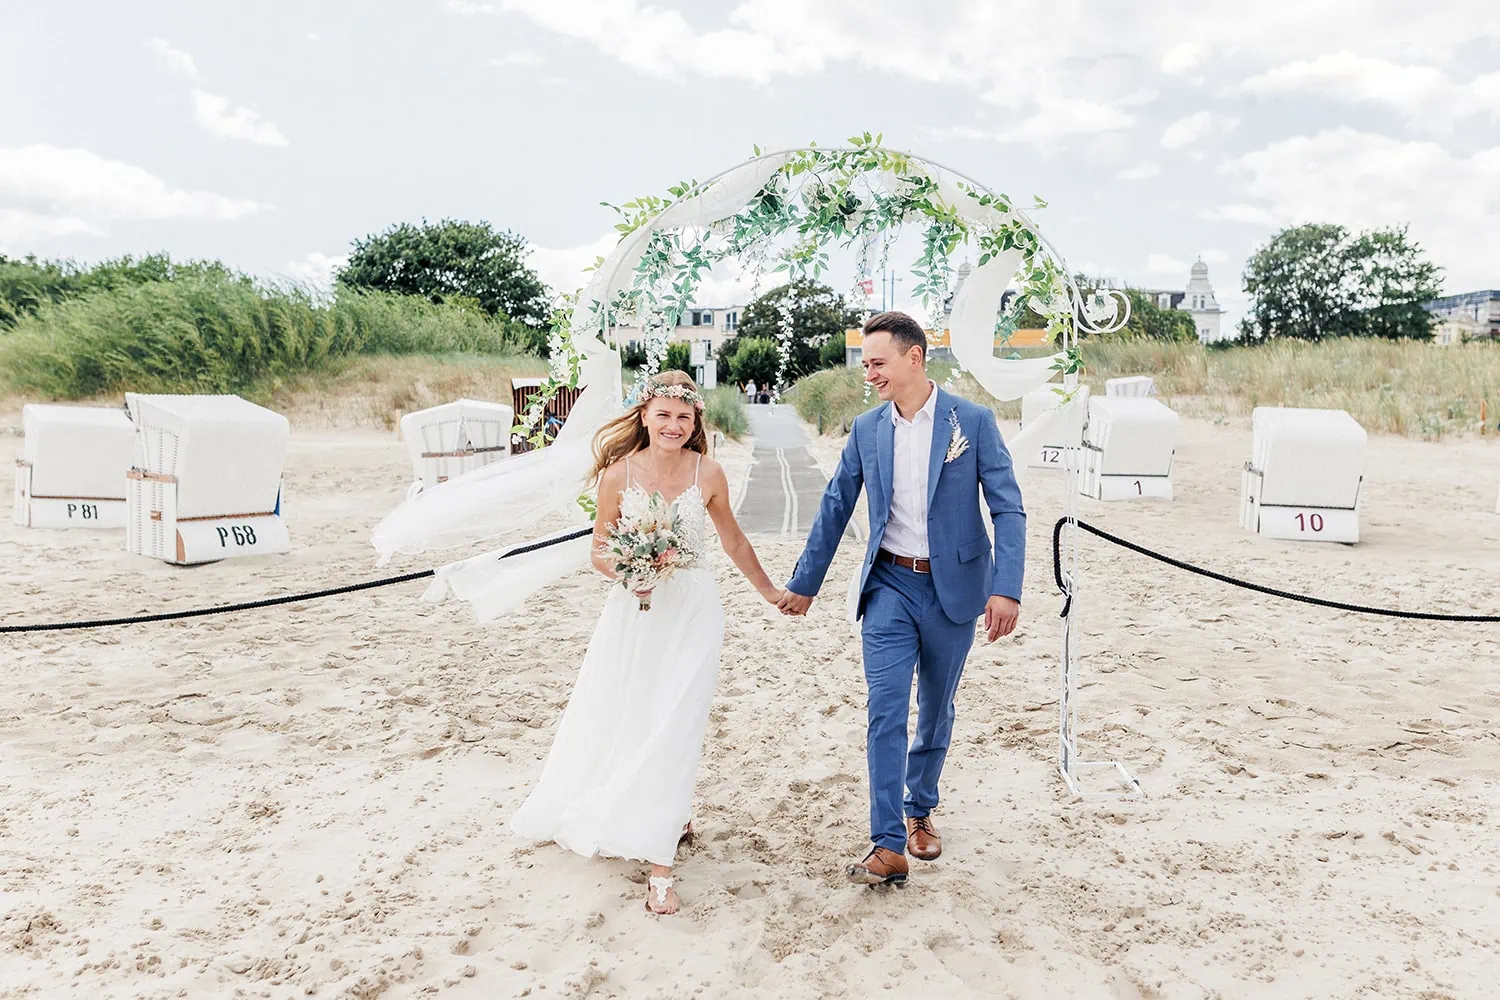 professionelles Hochzeitsbild von Hochzeitsfotografin Anke Schmidt aus Rostock